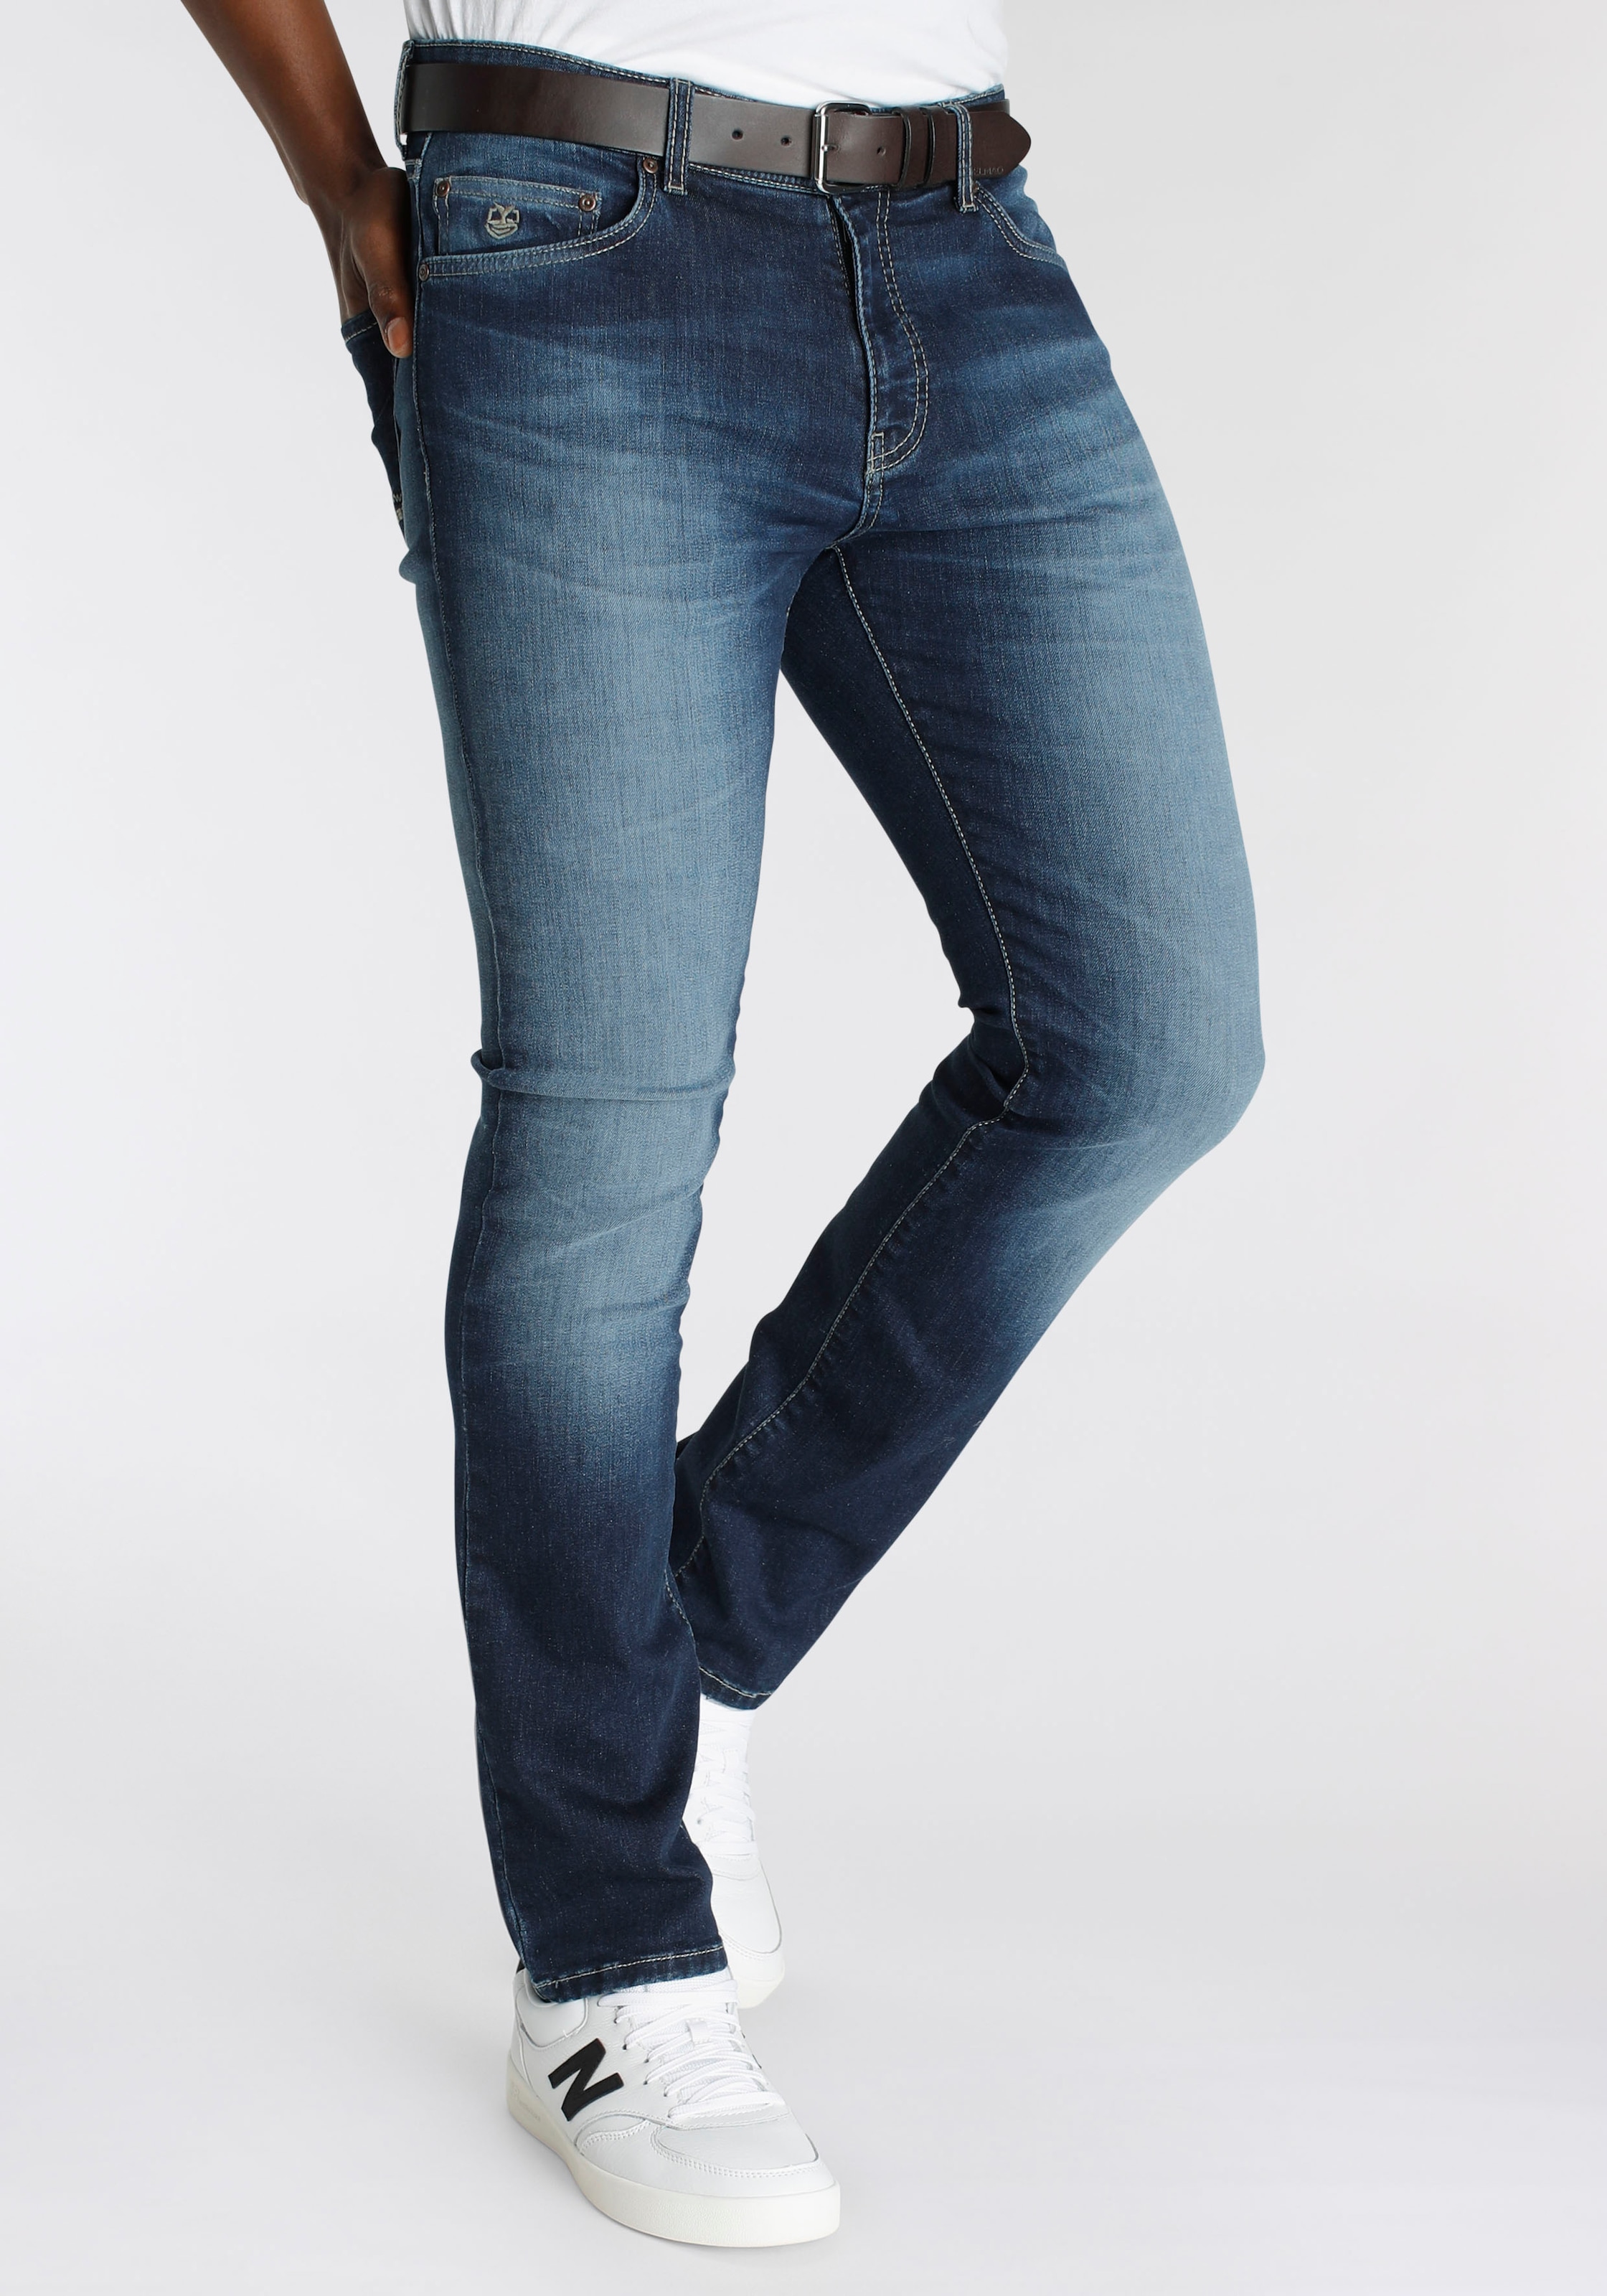 NEUE MARKE! Stretch-Jeans schöner Innenverarbeitung Online-Shop kaufen mit - DELMAO »\